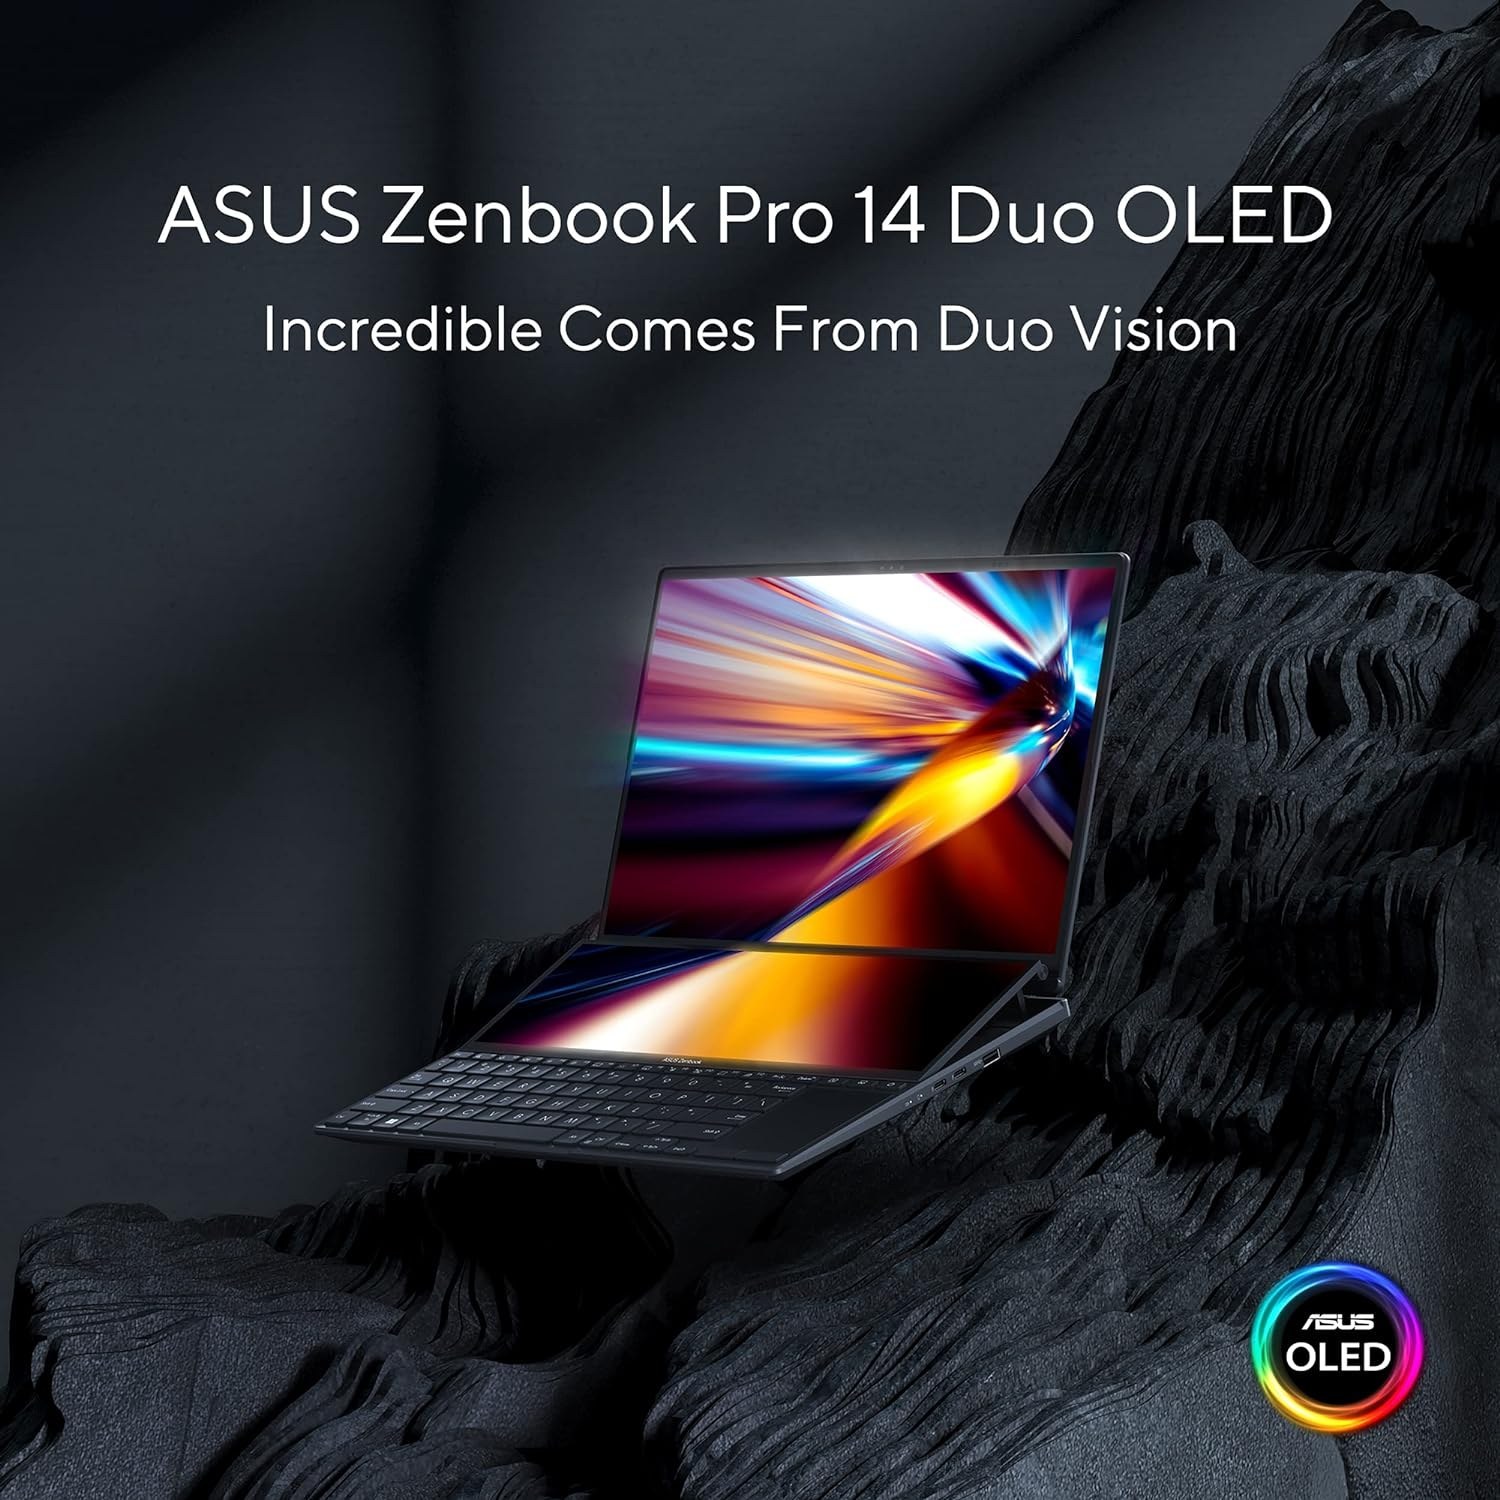 ASUS Newest Zenbook 14 2.8K (2880 x 1800) 90Hz OLED Laptop, 12th Gen Core  i5-1240P Processor (Beats i7-1185G7), Backlit Keyboard, Fingerprint Reader